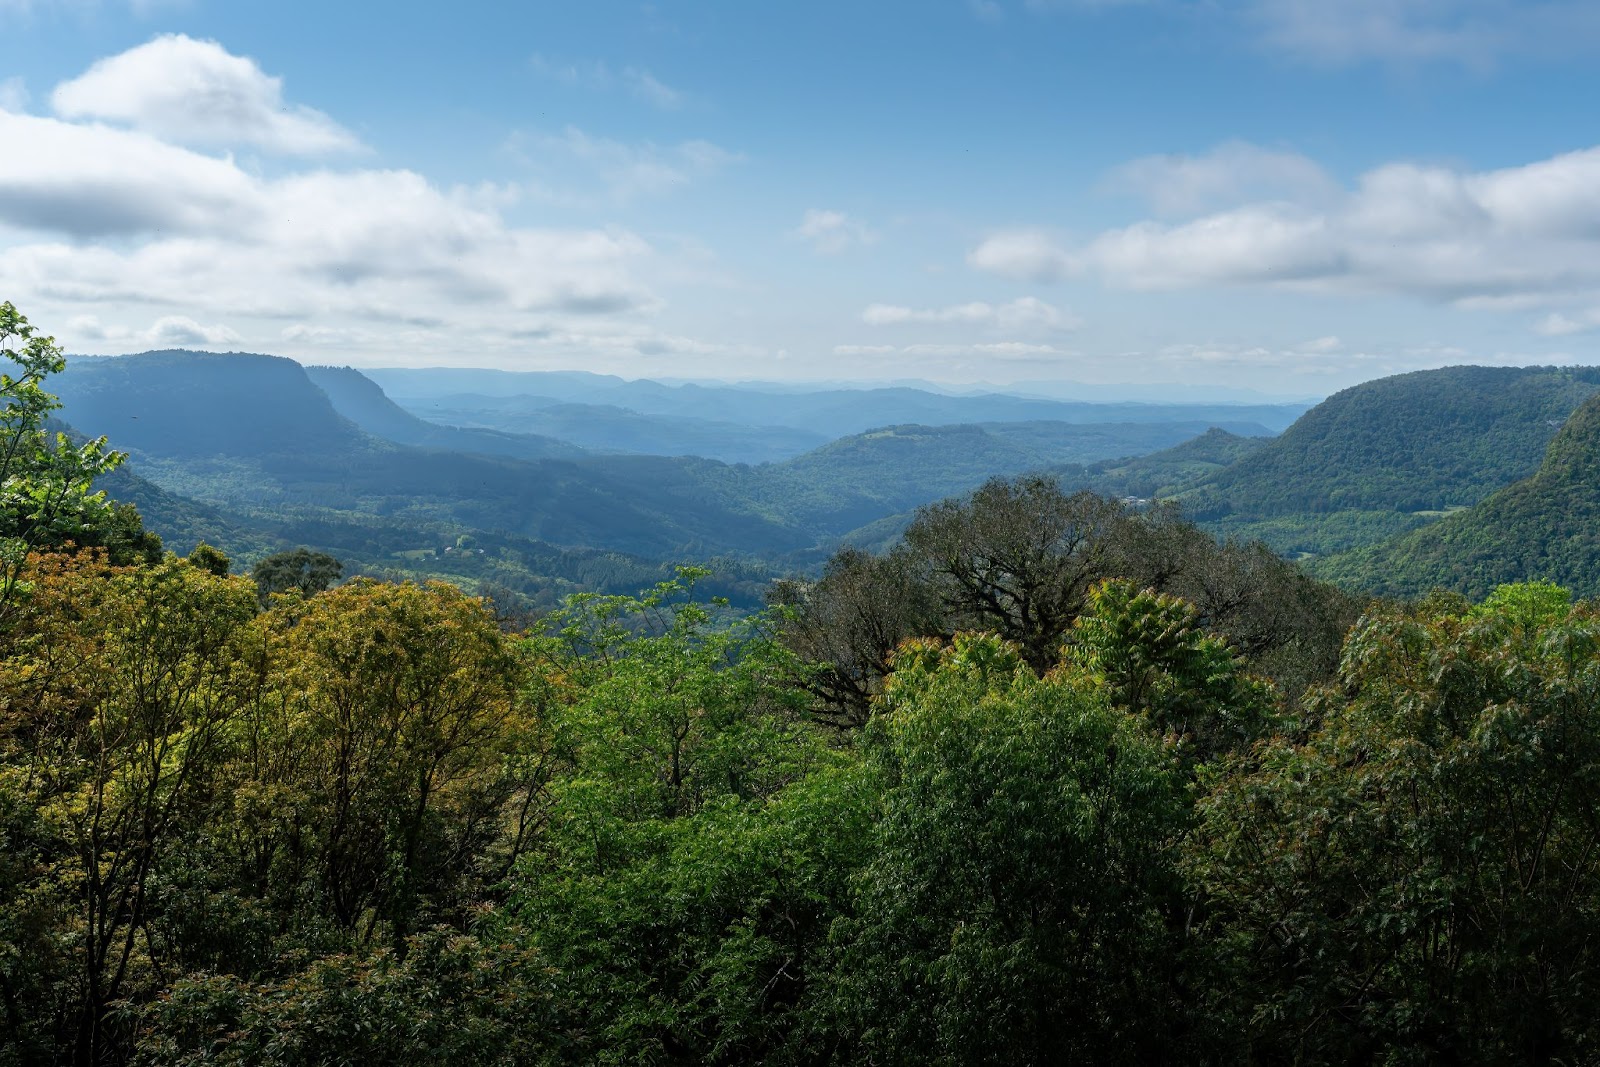 Vista do mirante para o Vale do Quilombo. Árvores de diferentes espécies em primeiro plano, com montanhas ao fundo.